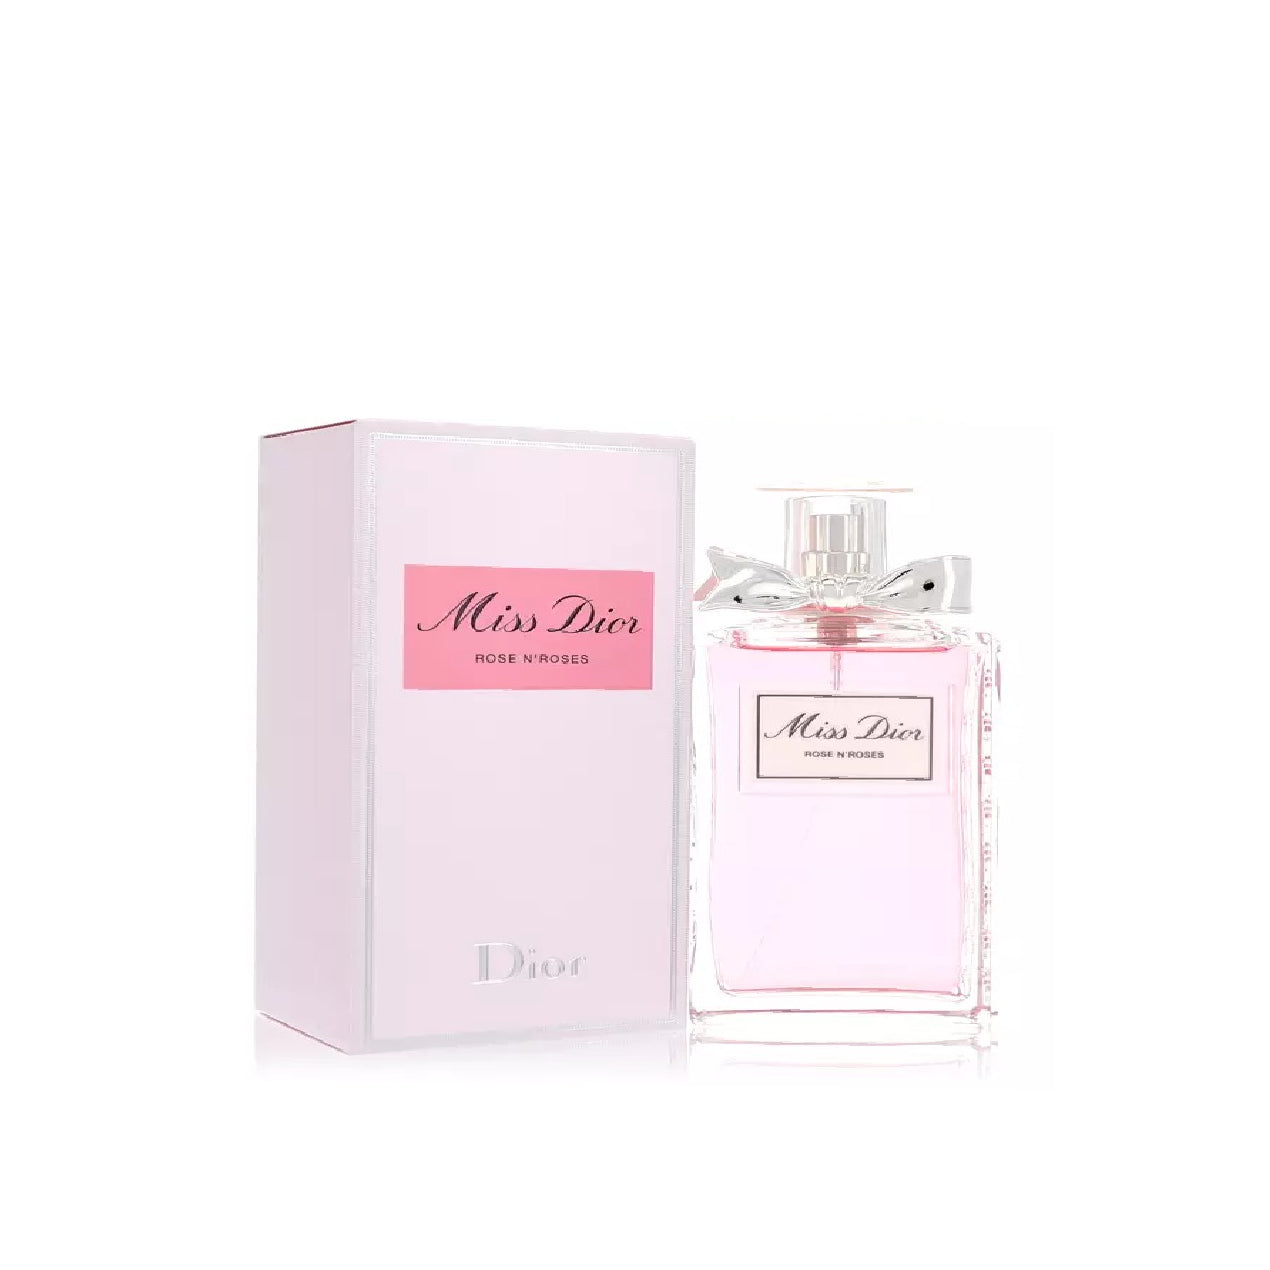 Miss Dior Rose N'roses Perfume